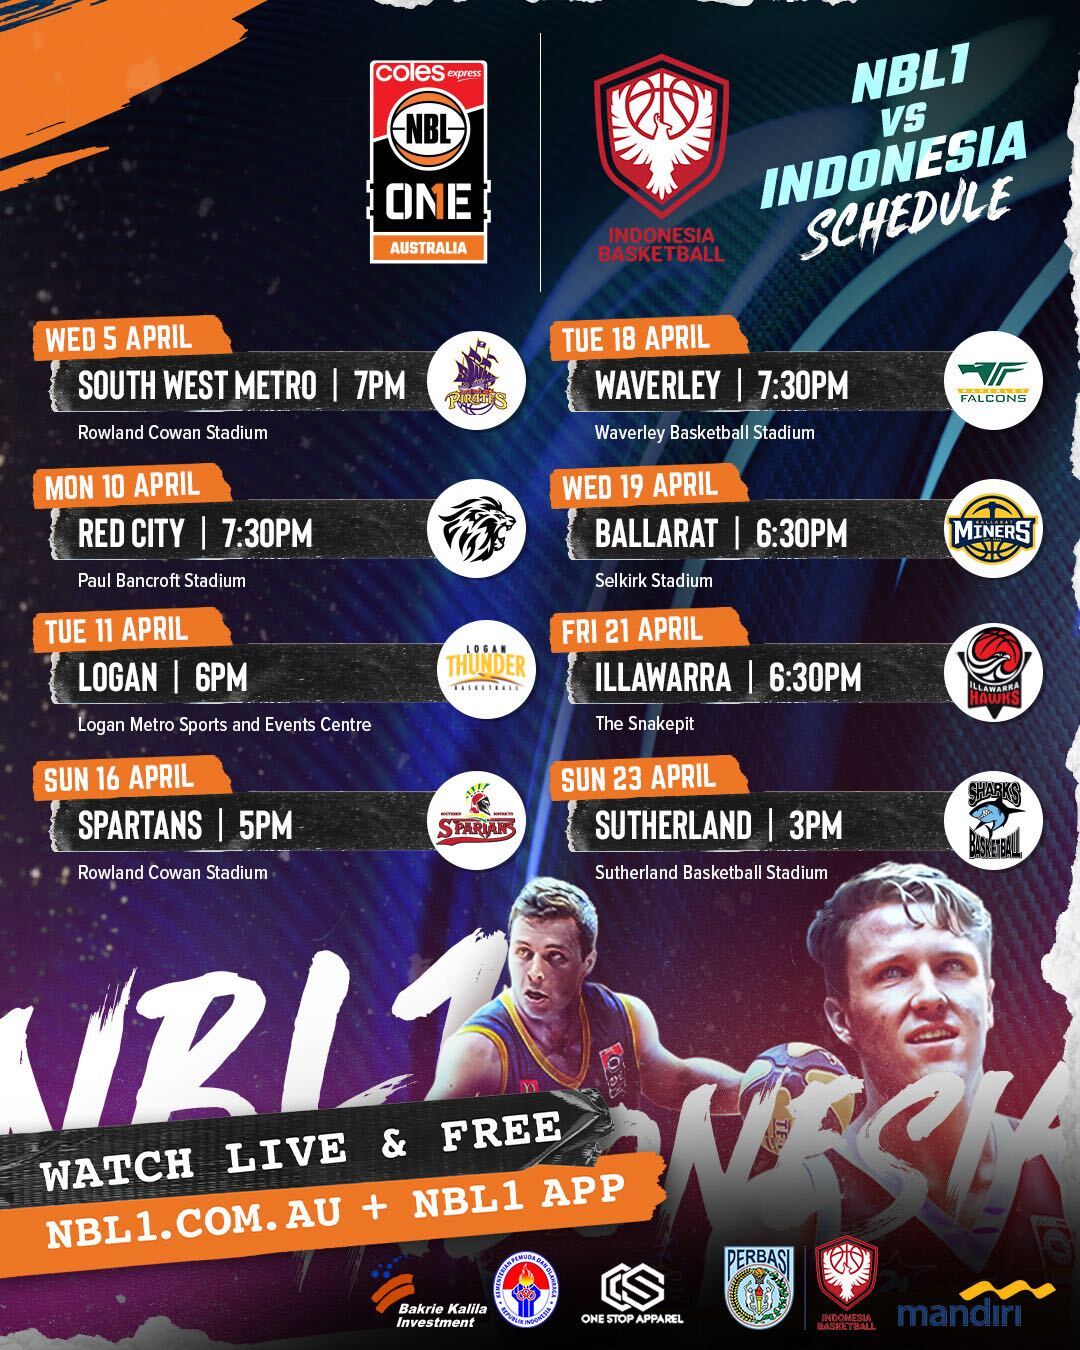 NBL1 vs Indonesia schedule